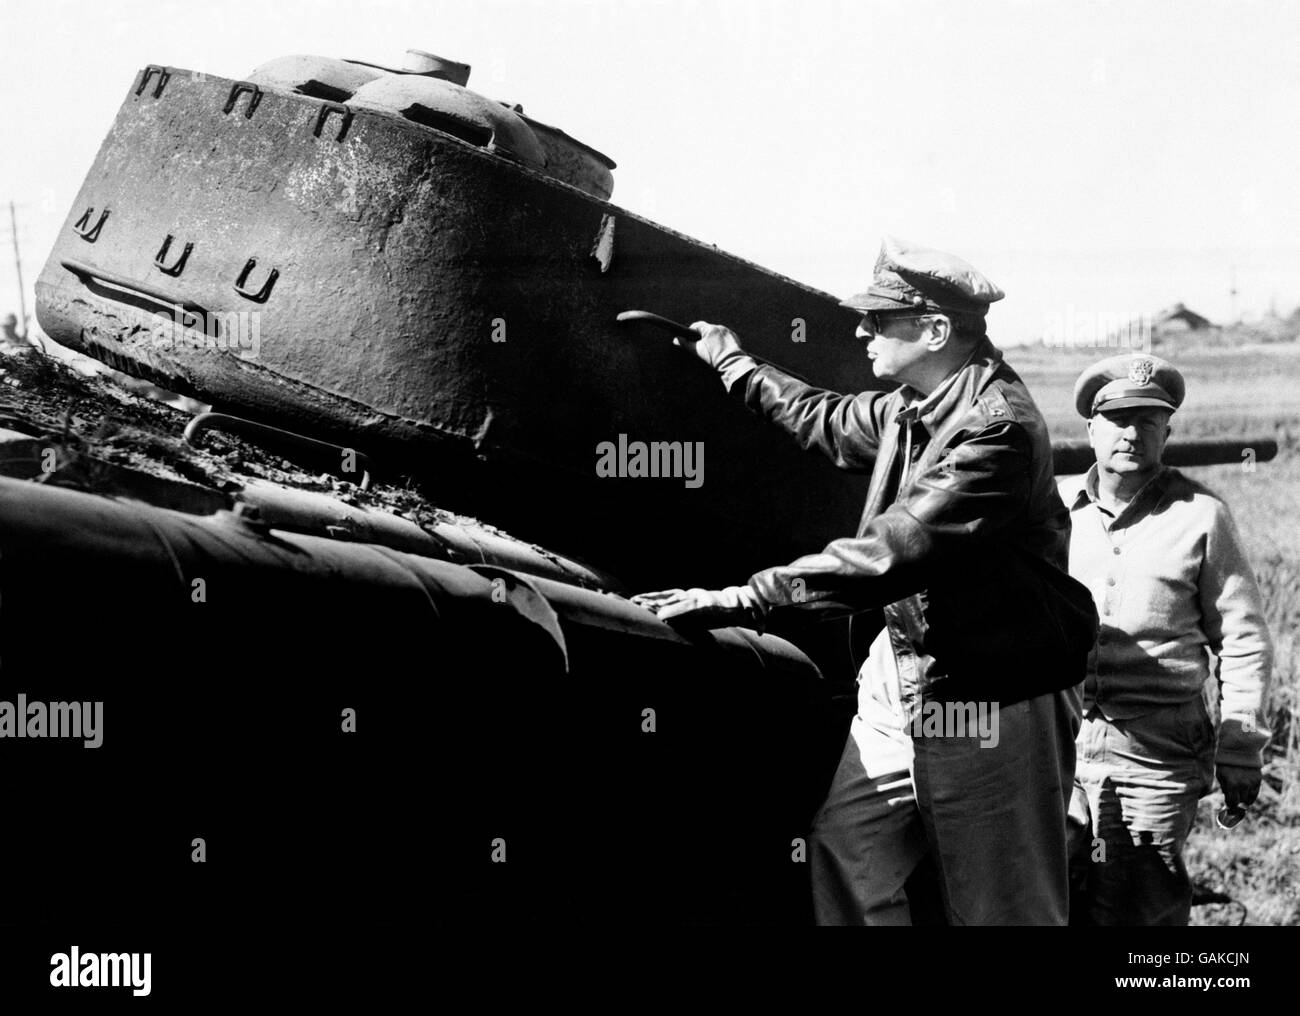 Der Armeegeneral Douglas MacArthur, Oberbefehlshaber der Vereinten Nationen in korea, untersucht einen angeschlagene nordkoreanische Panzer, der von einem zurückziehenden Feind irgendwo in der Nähe der koreanischen Front zurückgelassen wurde. Stockfoto